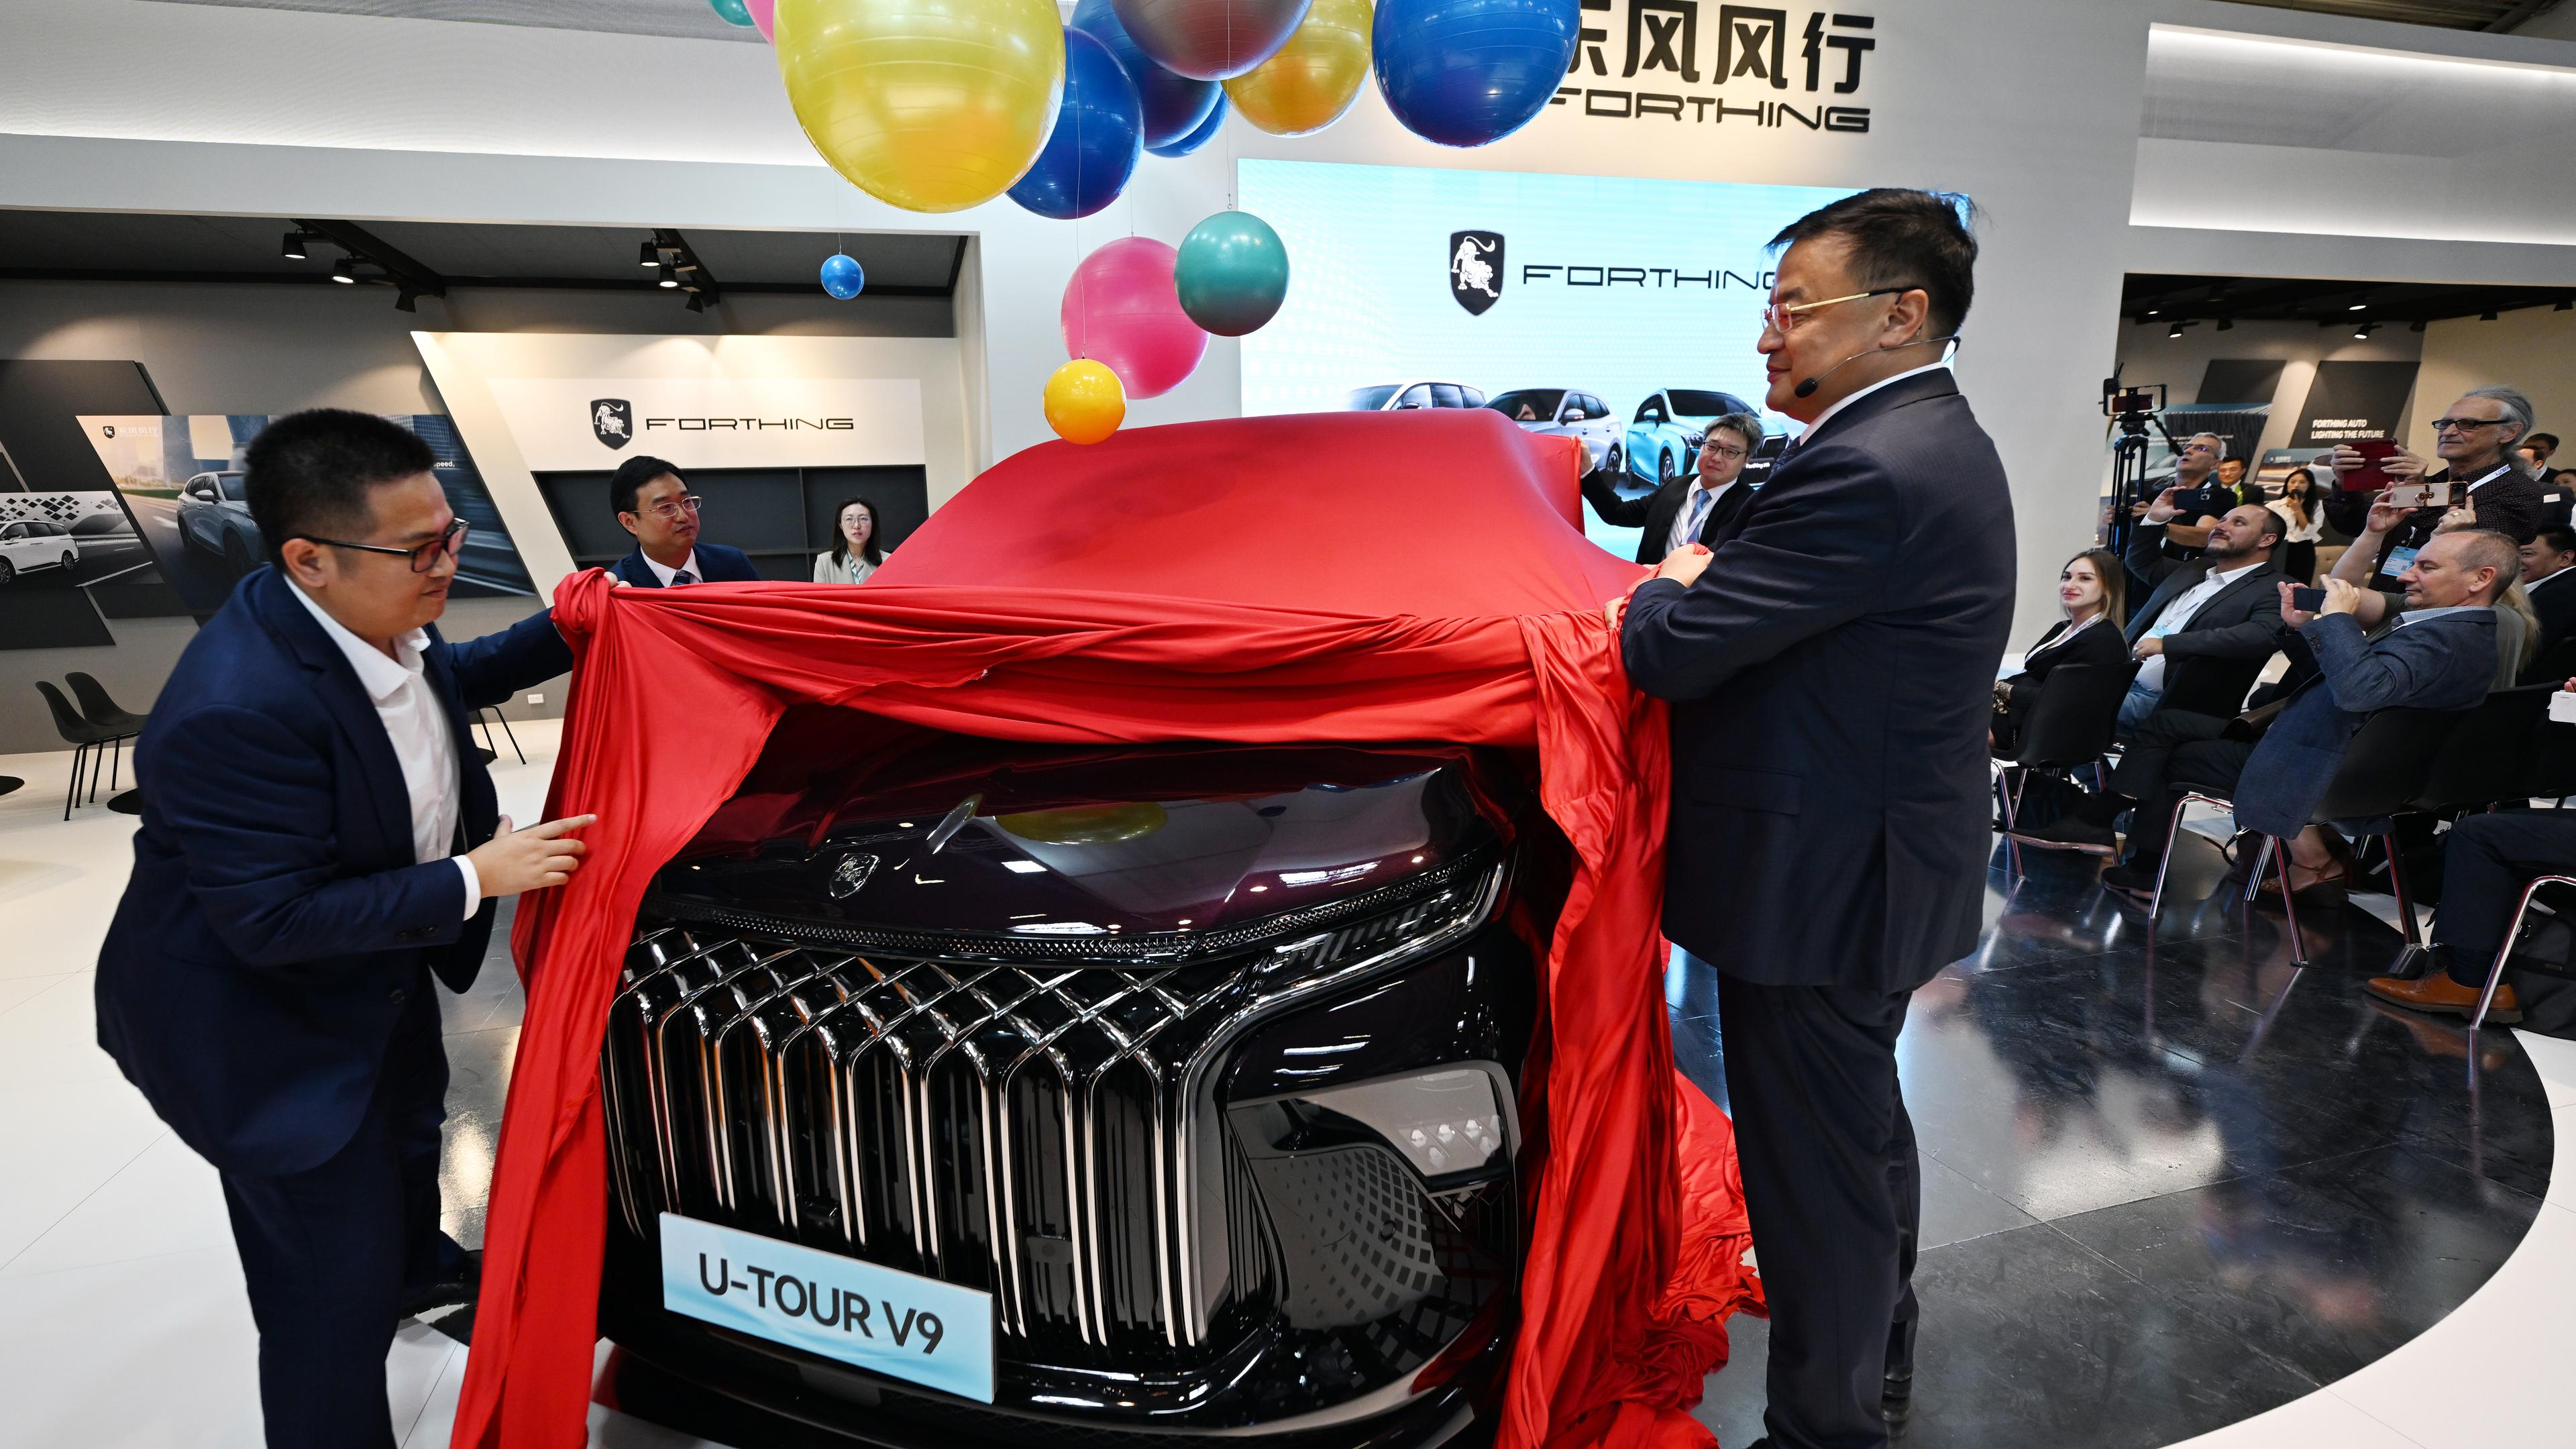 Bayern, München: Manager der Dongfeng Liuzhou Motor Co. Ltd. enthüllen ein neues Fahrzeug der Marke Forthing beim Pressetag der Auto- und Verkehrsmesse IAA in einer Halle der Messe München.